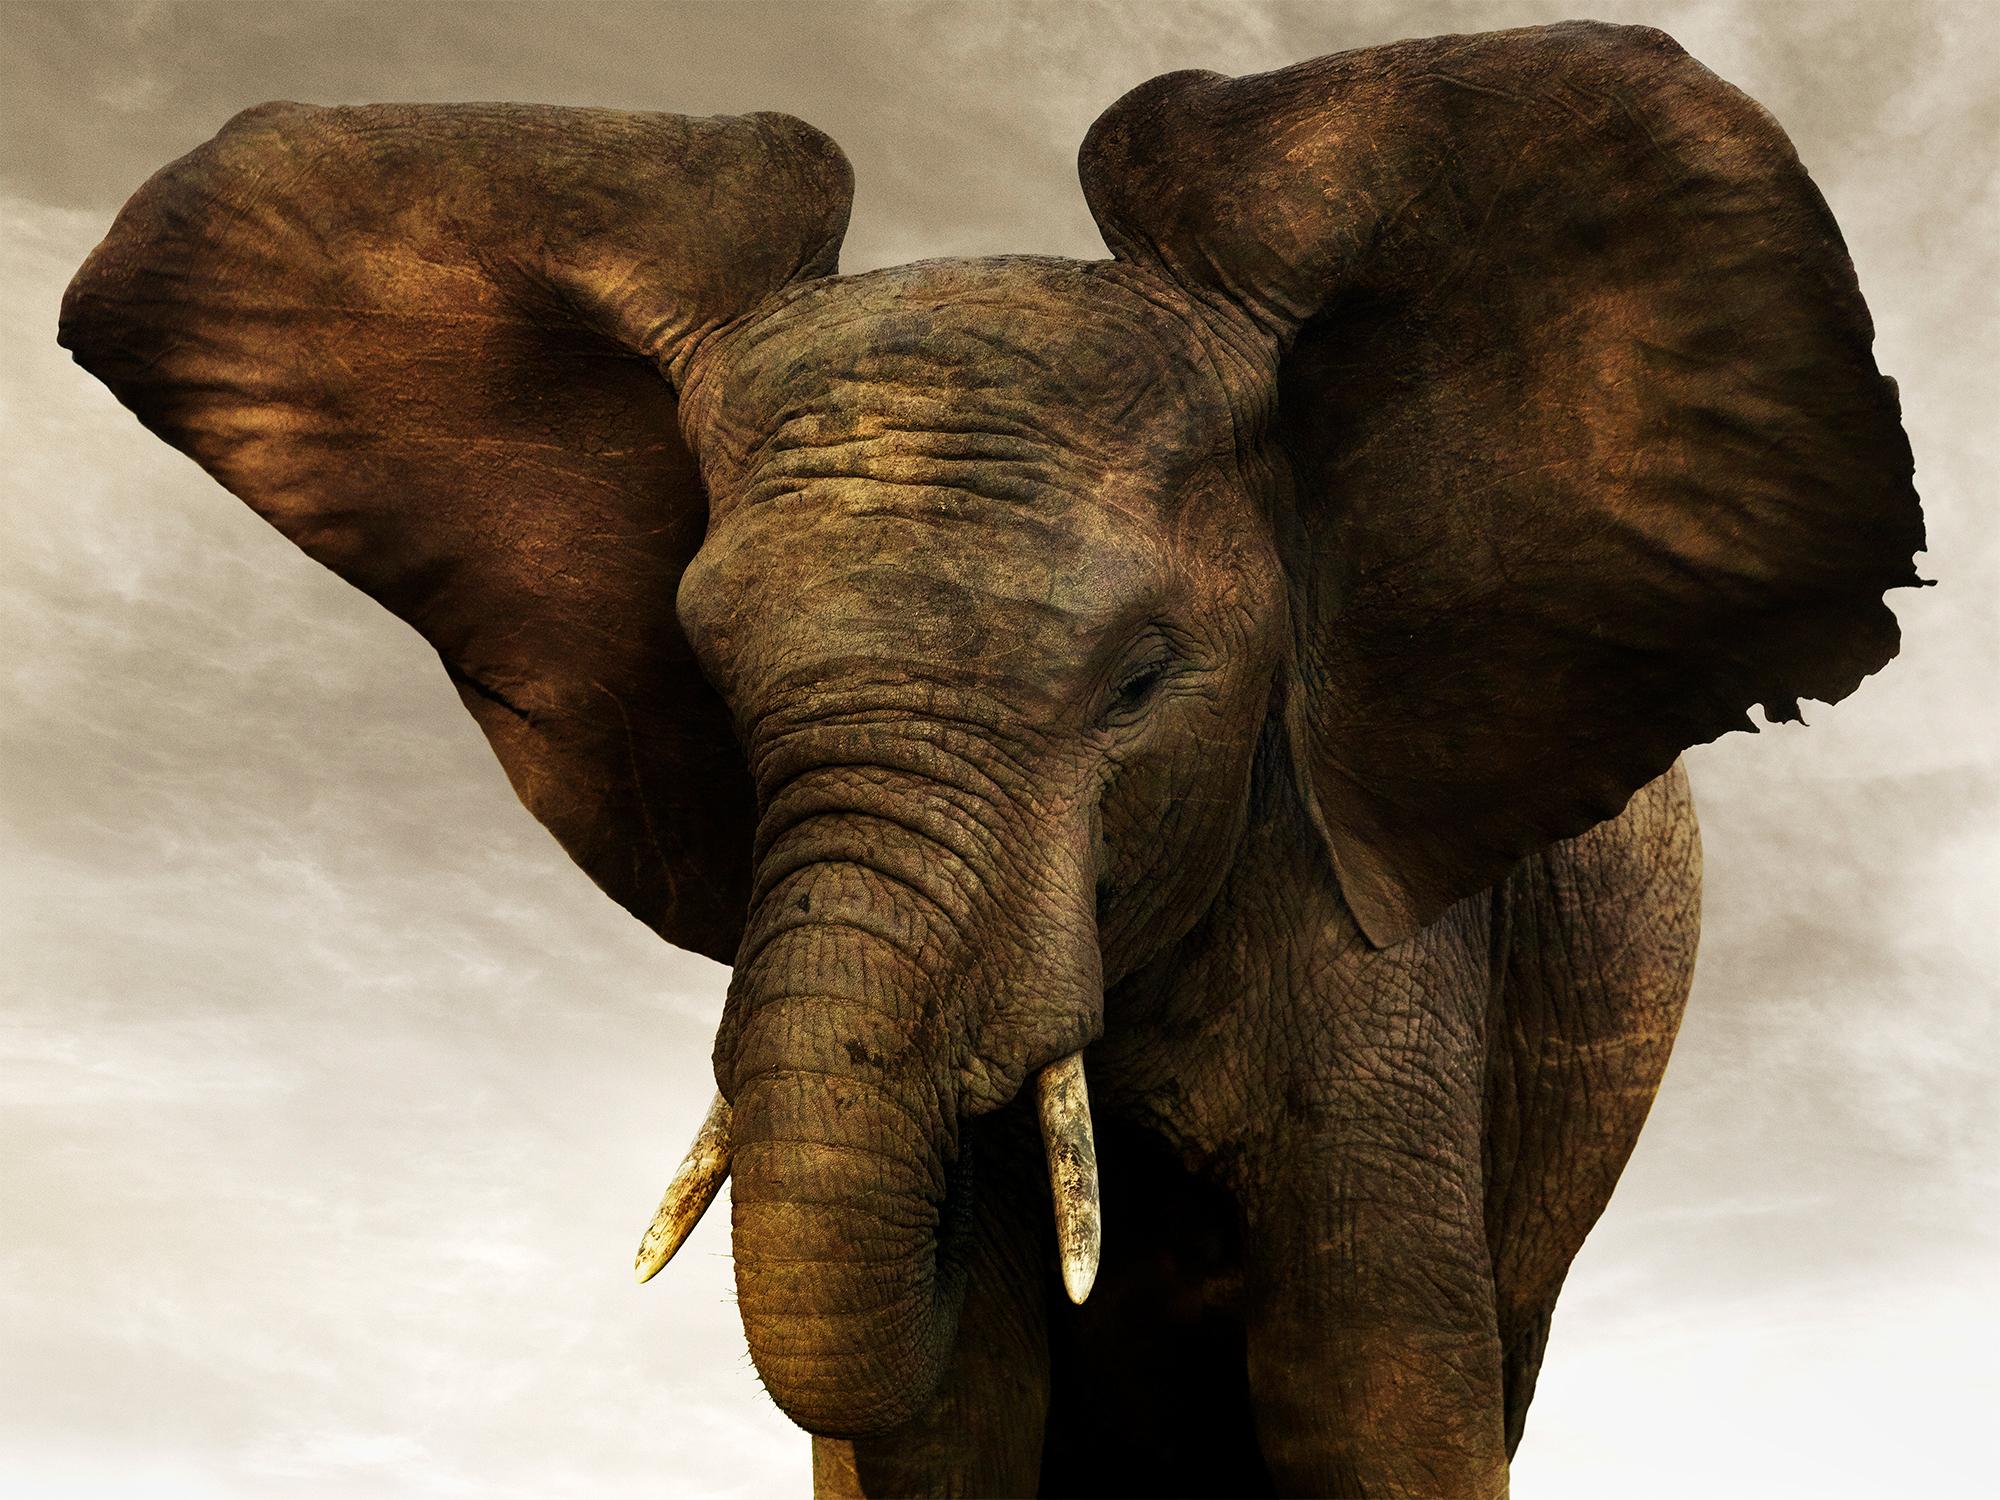 Goldener Riesen II, Tier, Tierwelt, Schwarz-Weiß-Fotografie, Elefant